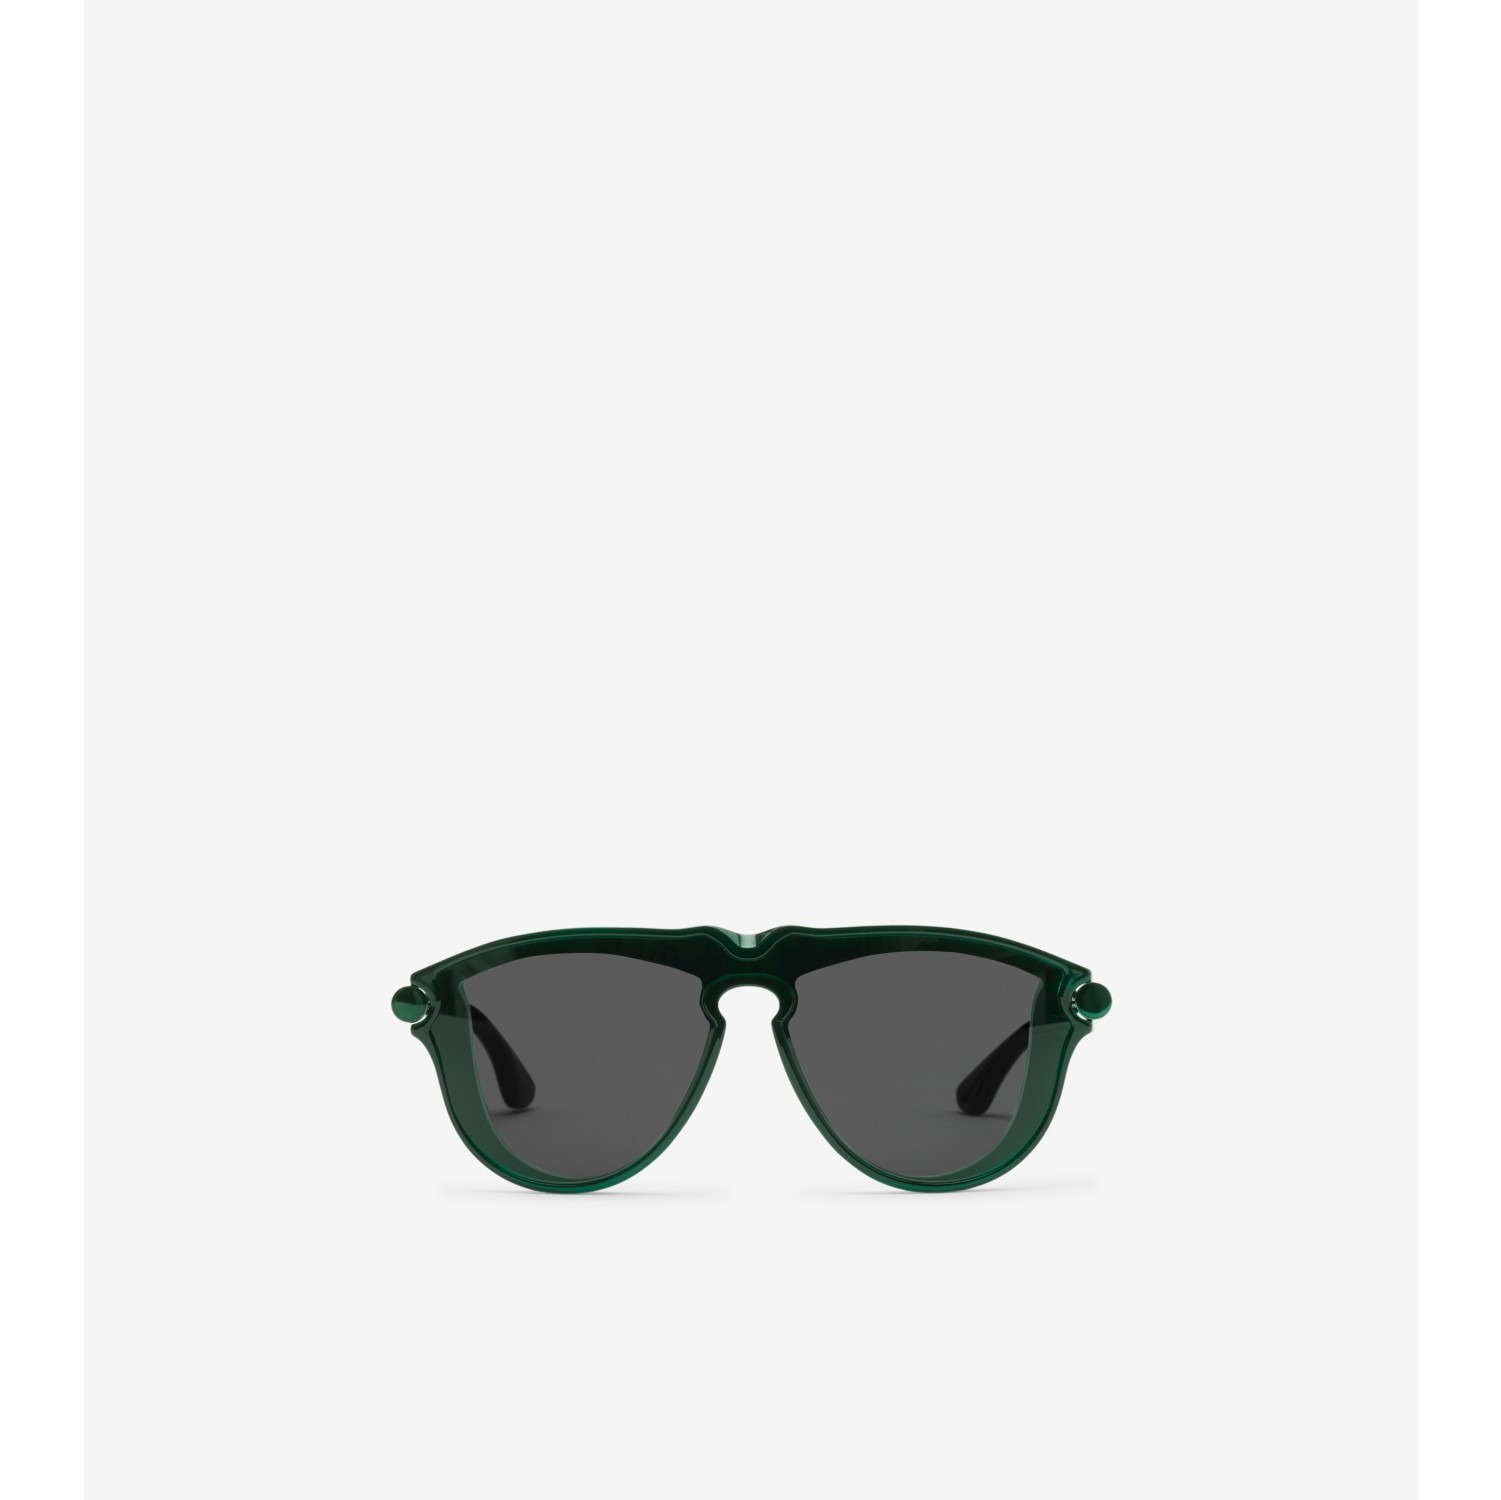 Panno per pulizia occhiali - design verde bianco